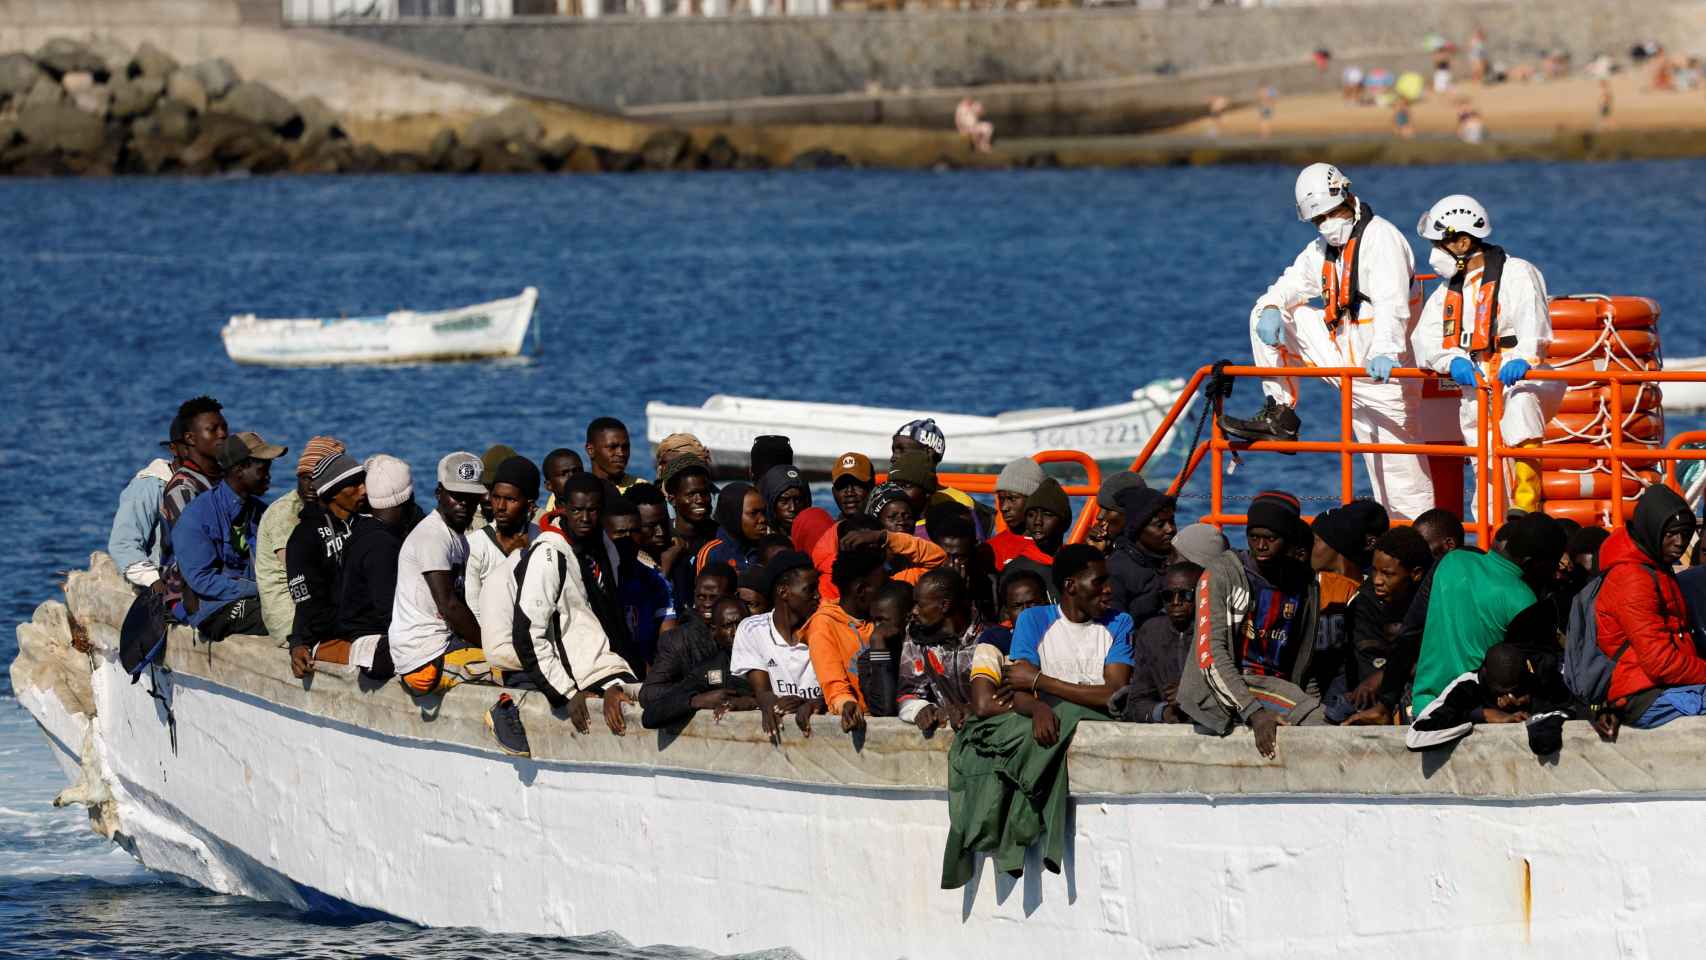 Decenas de inmigrantes africanos llegando a Gran Canaria este pasado martes 2 de enero.